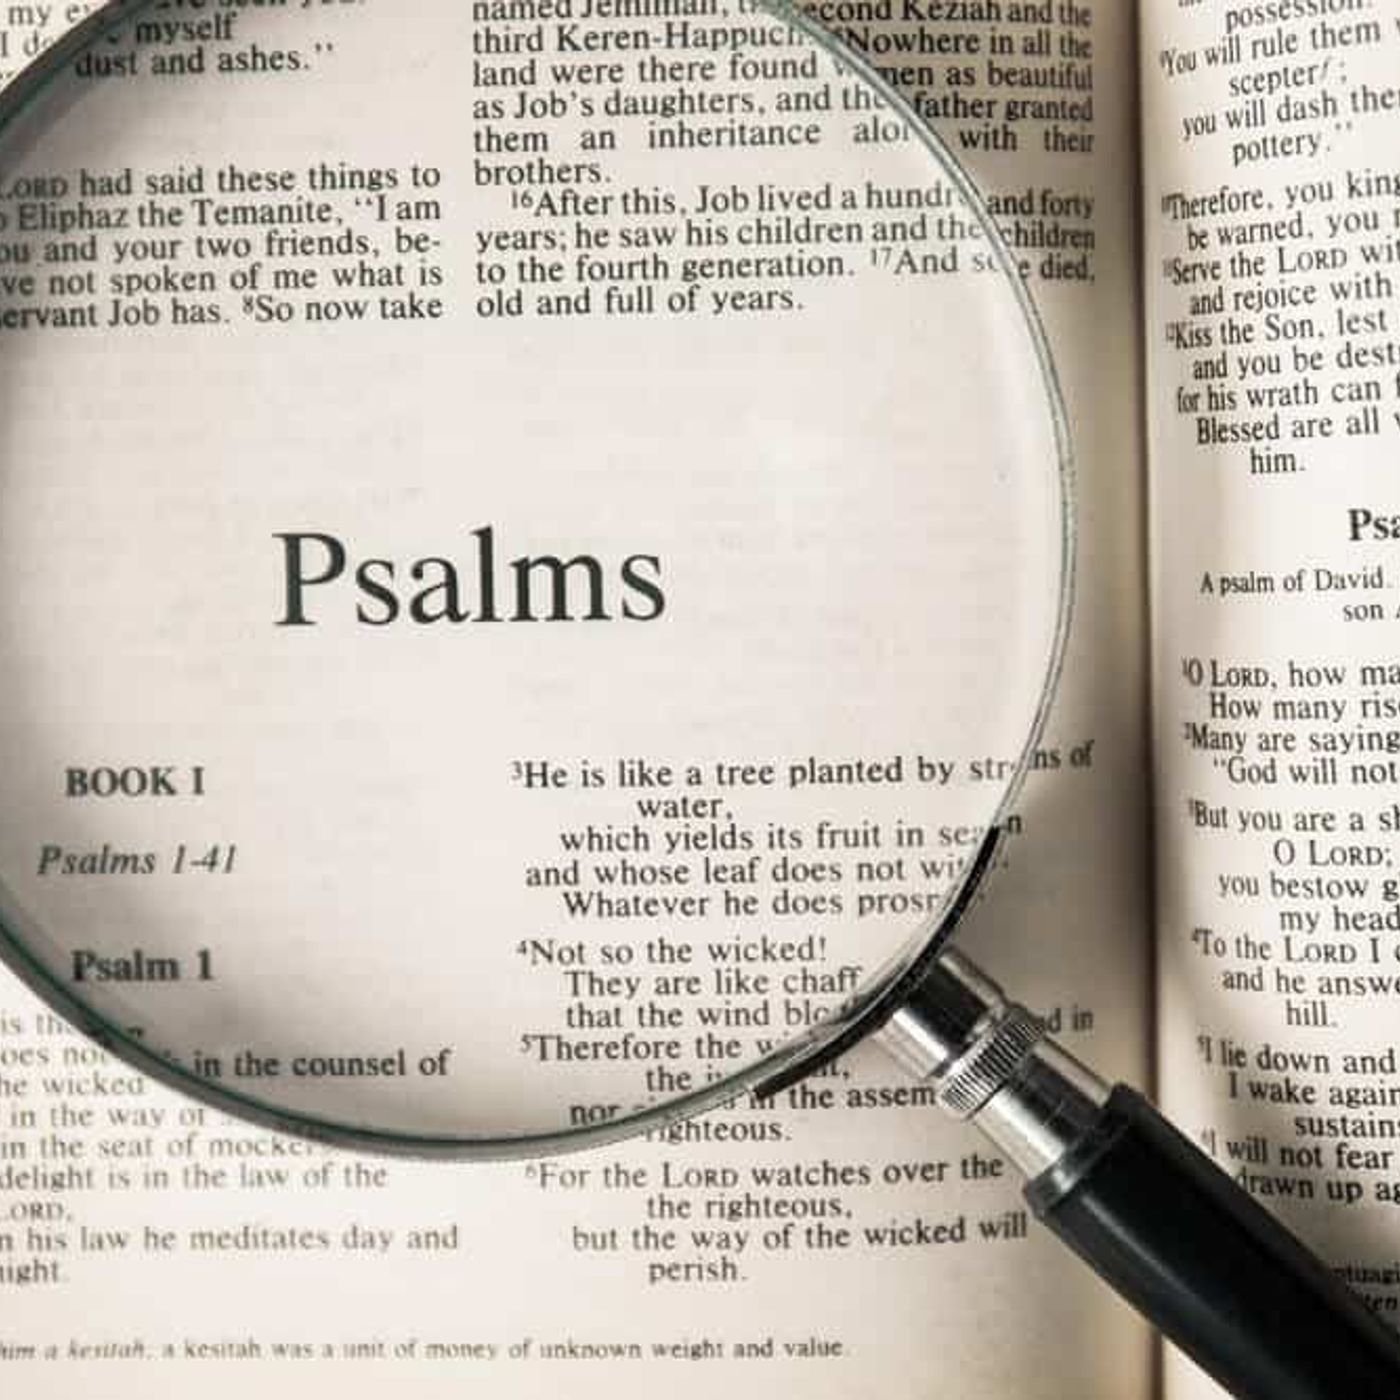 Messianic Psalms or Praying the Psalms?